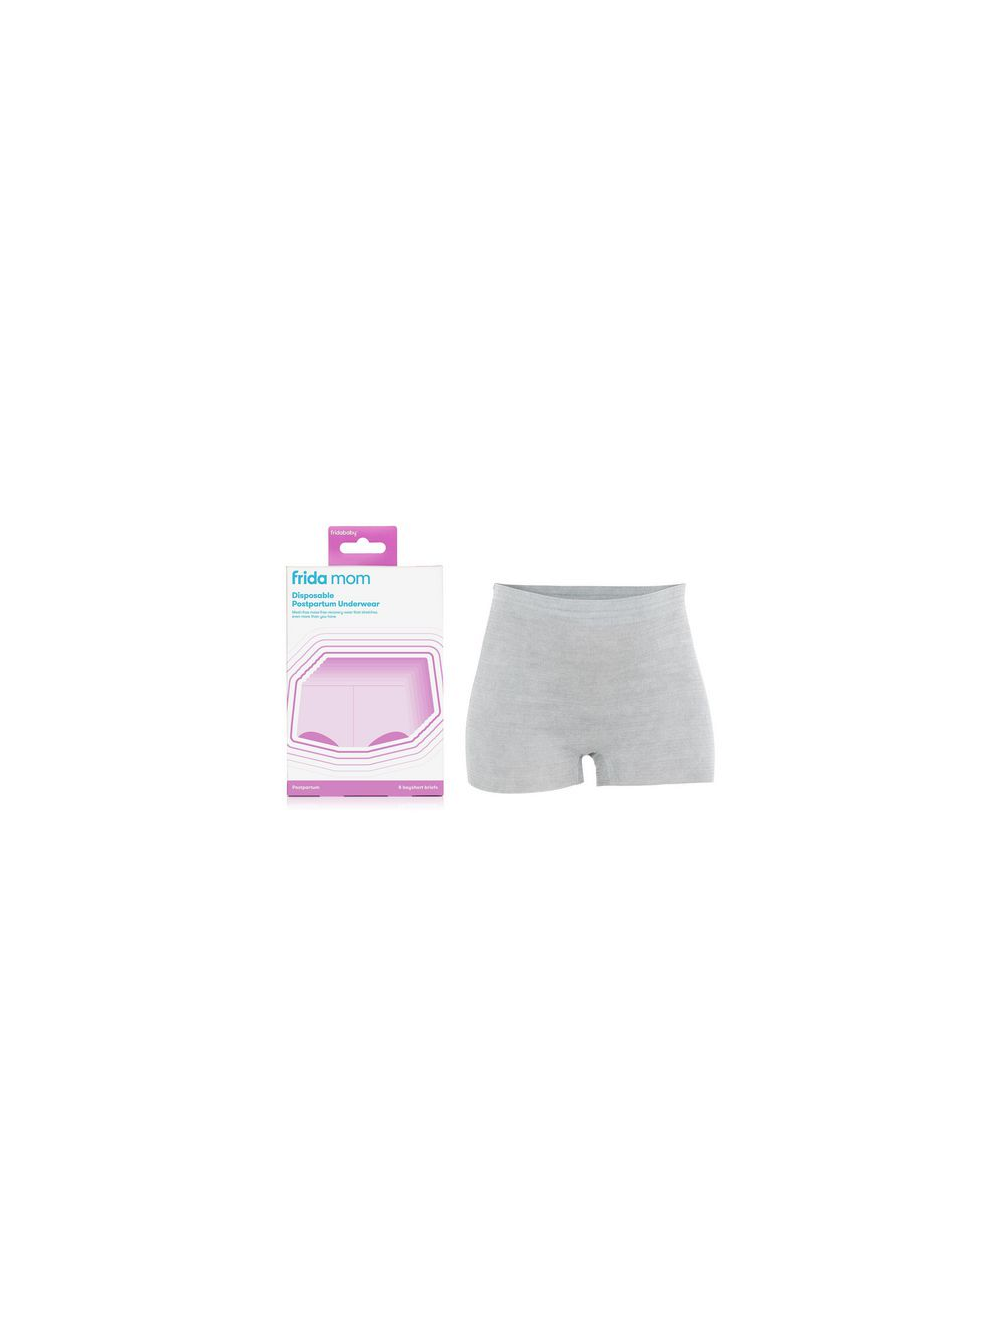 FridaMom Disposable Underwear